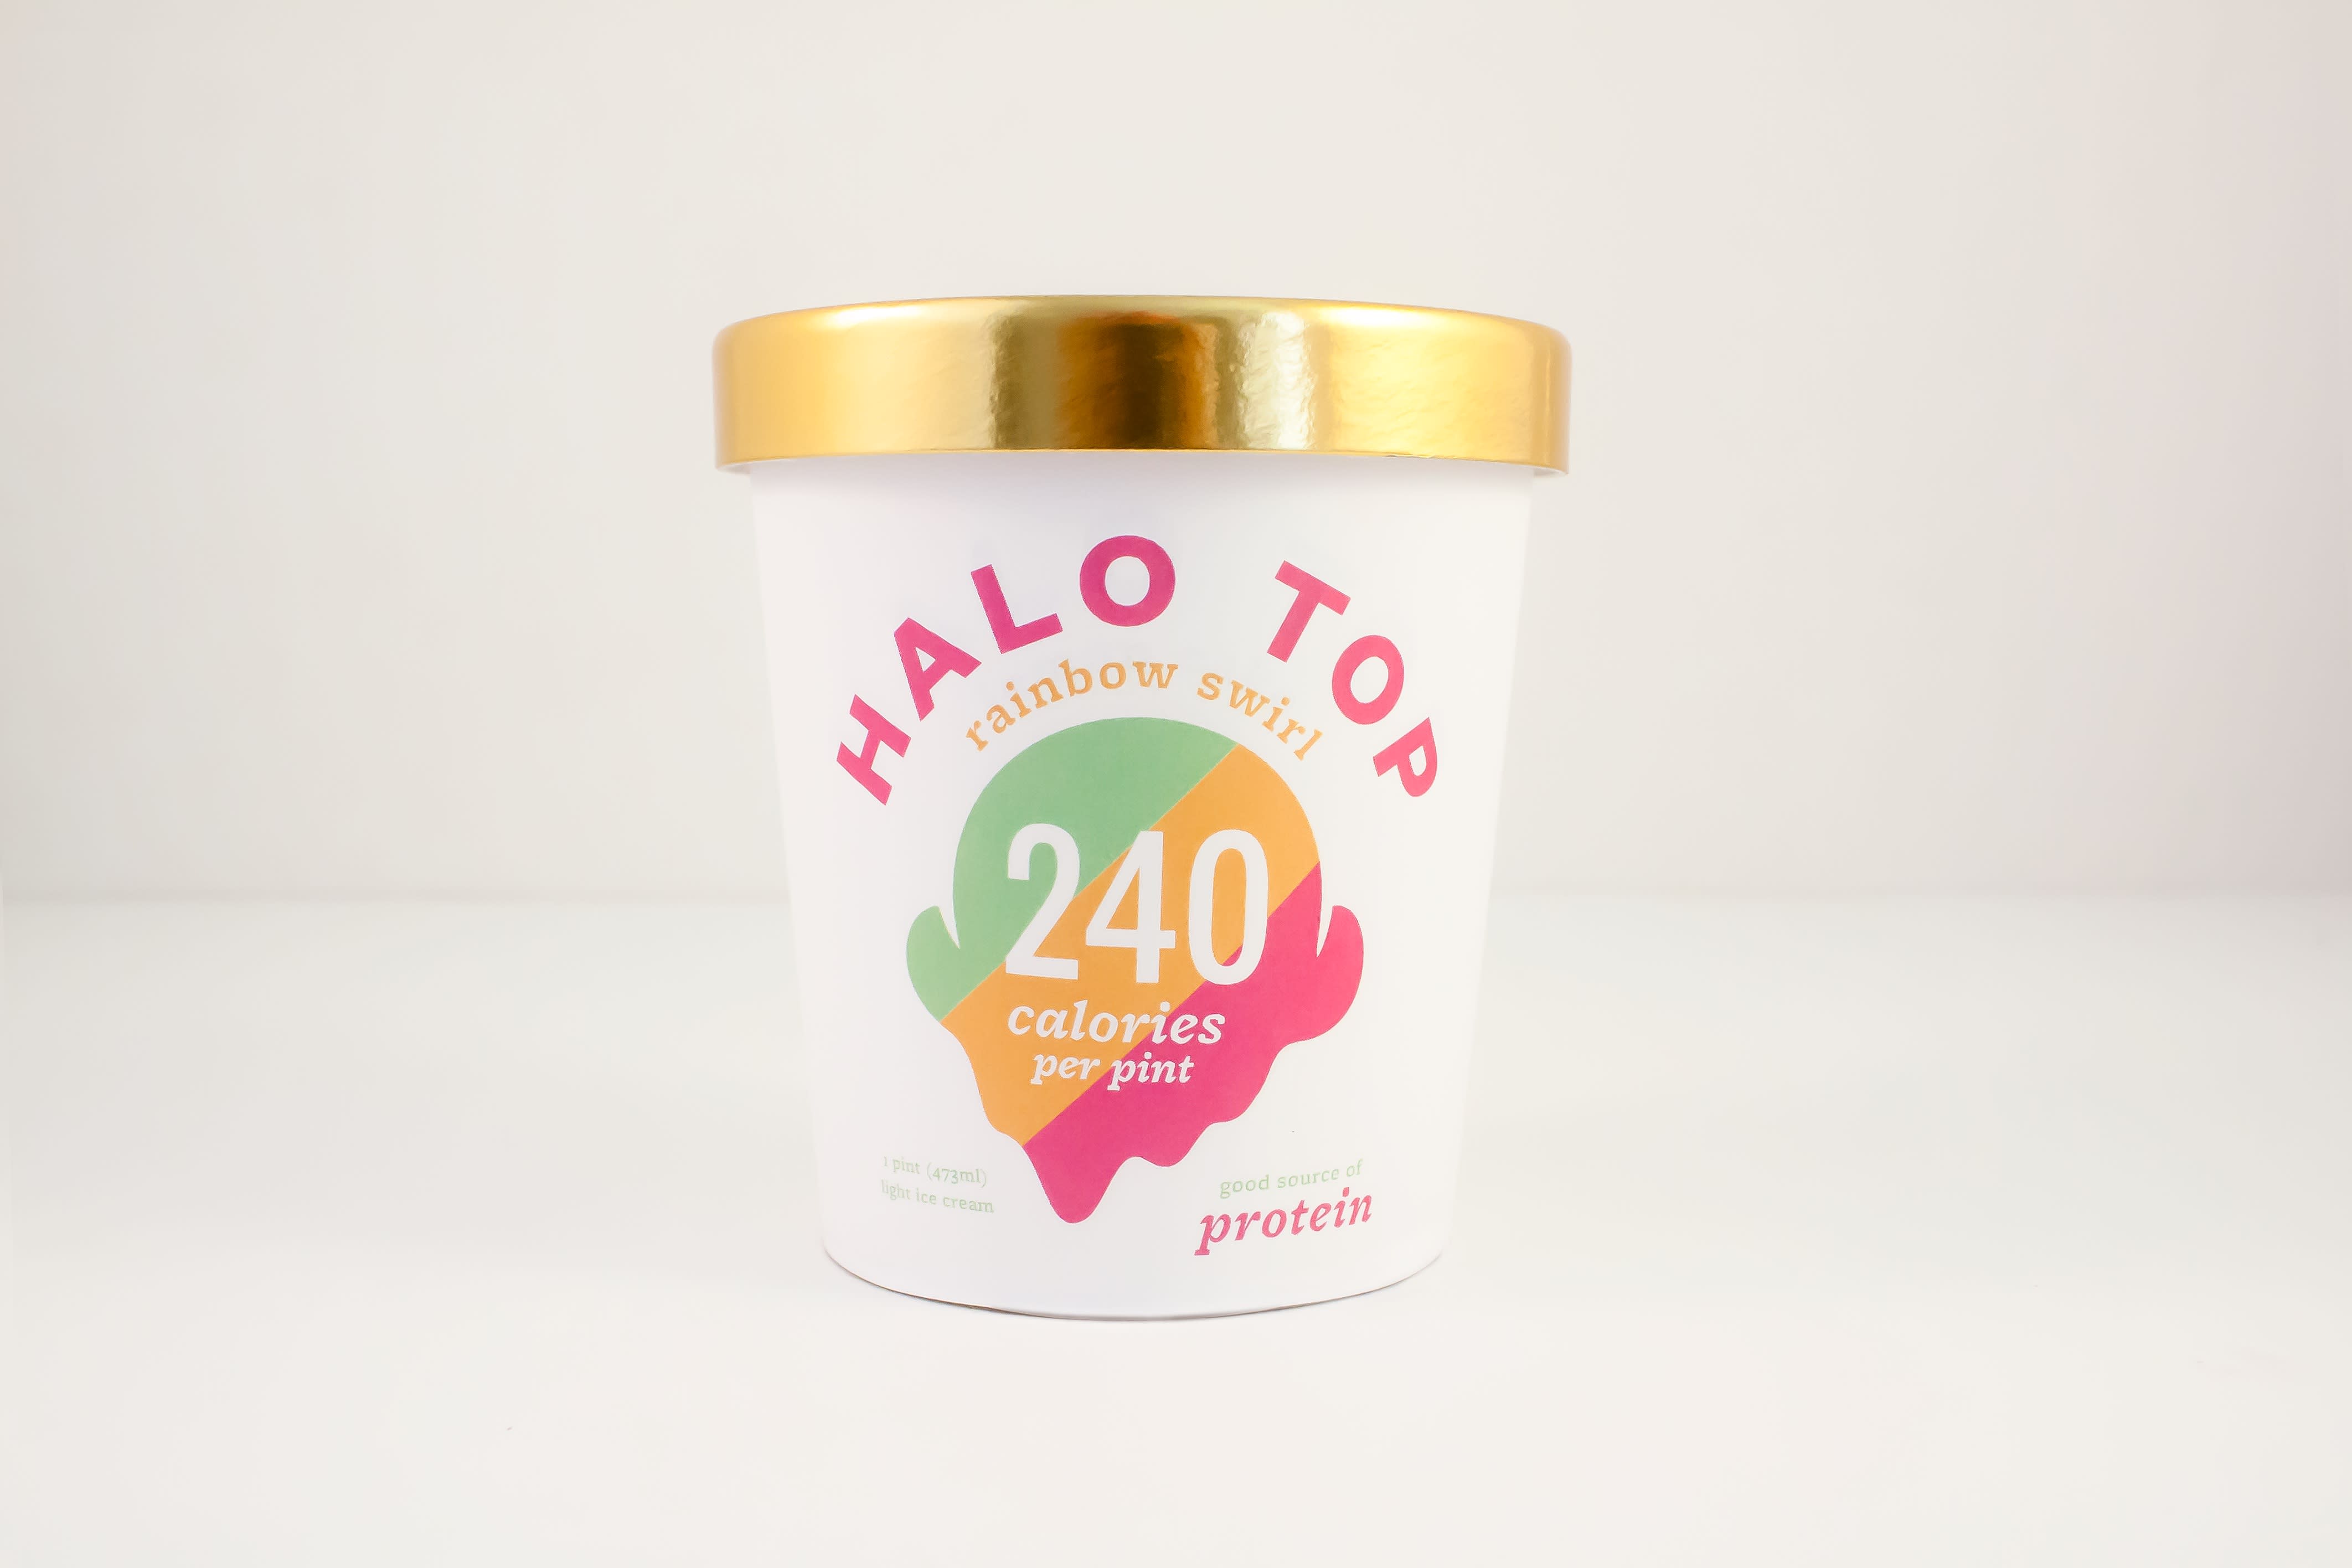 halo top ice cream retailers